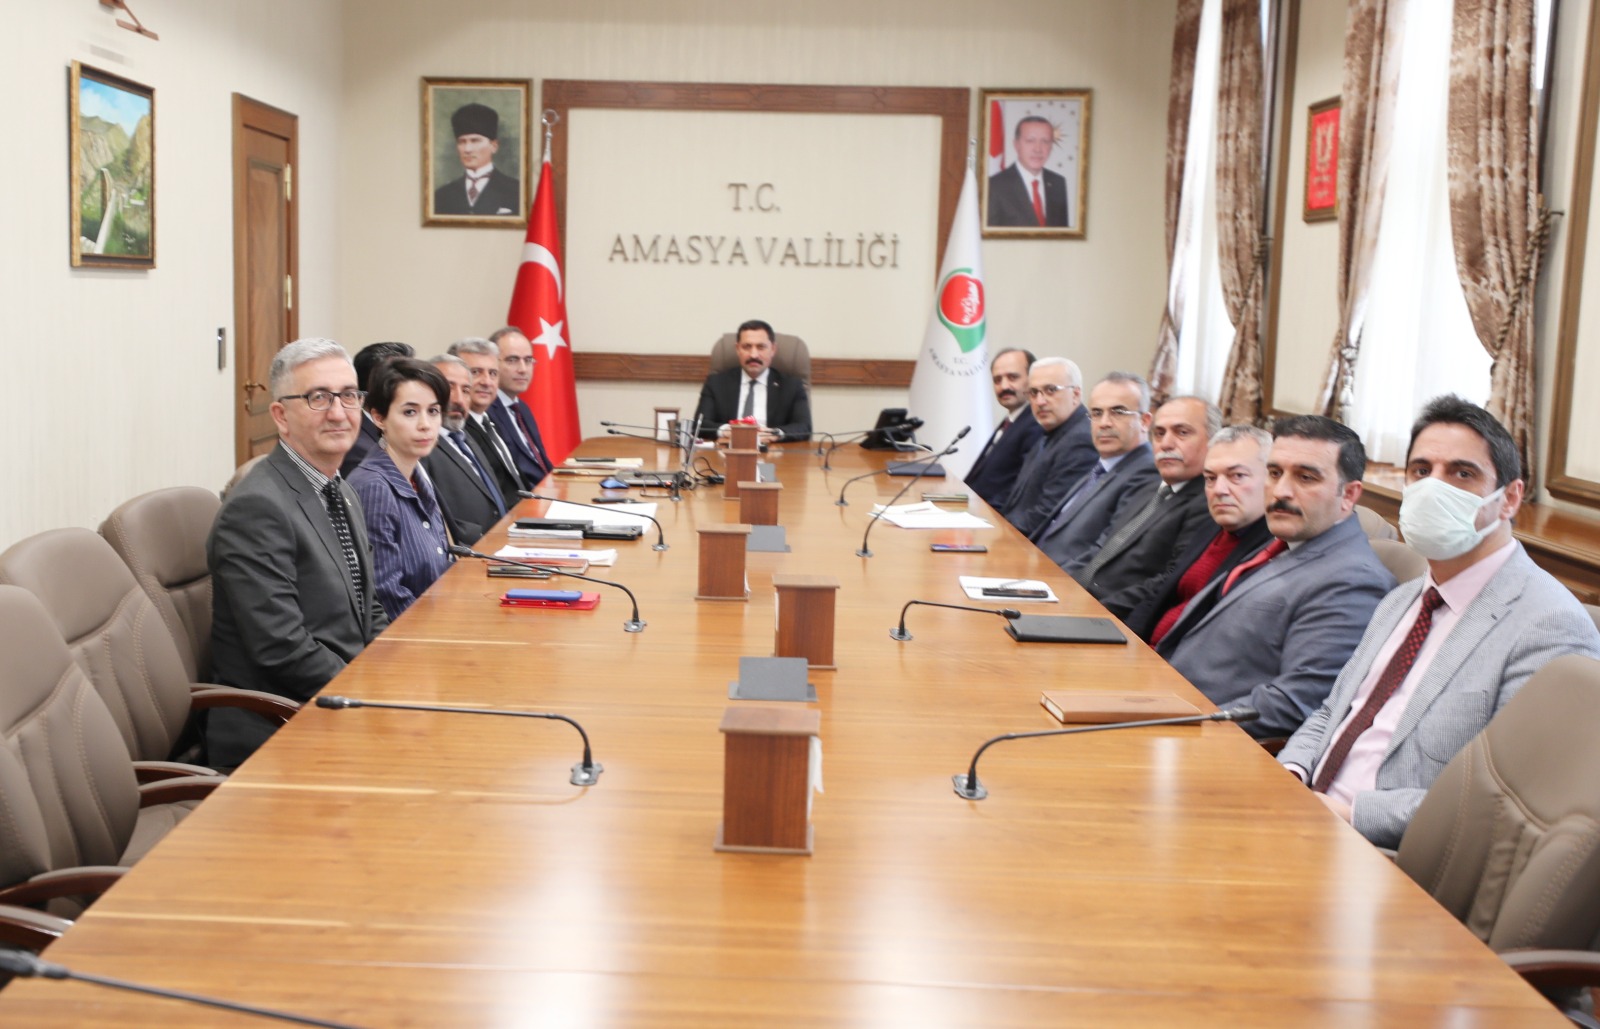 Amasya Valisi Mustafa MASATLI, “Amasya’mıza Değer Katacak Yeni Projeler Geliştirmeye Devam Edeceğiz.”